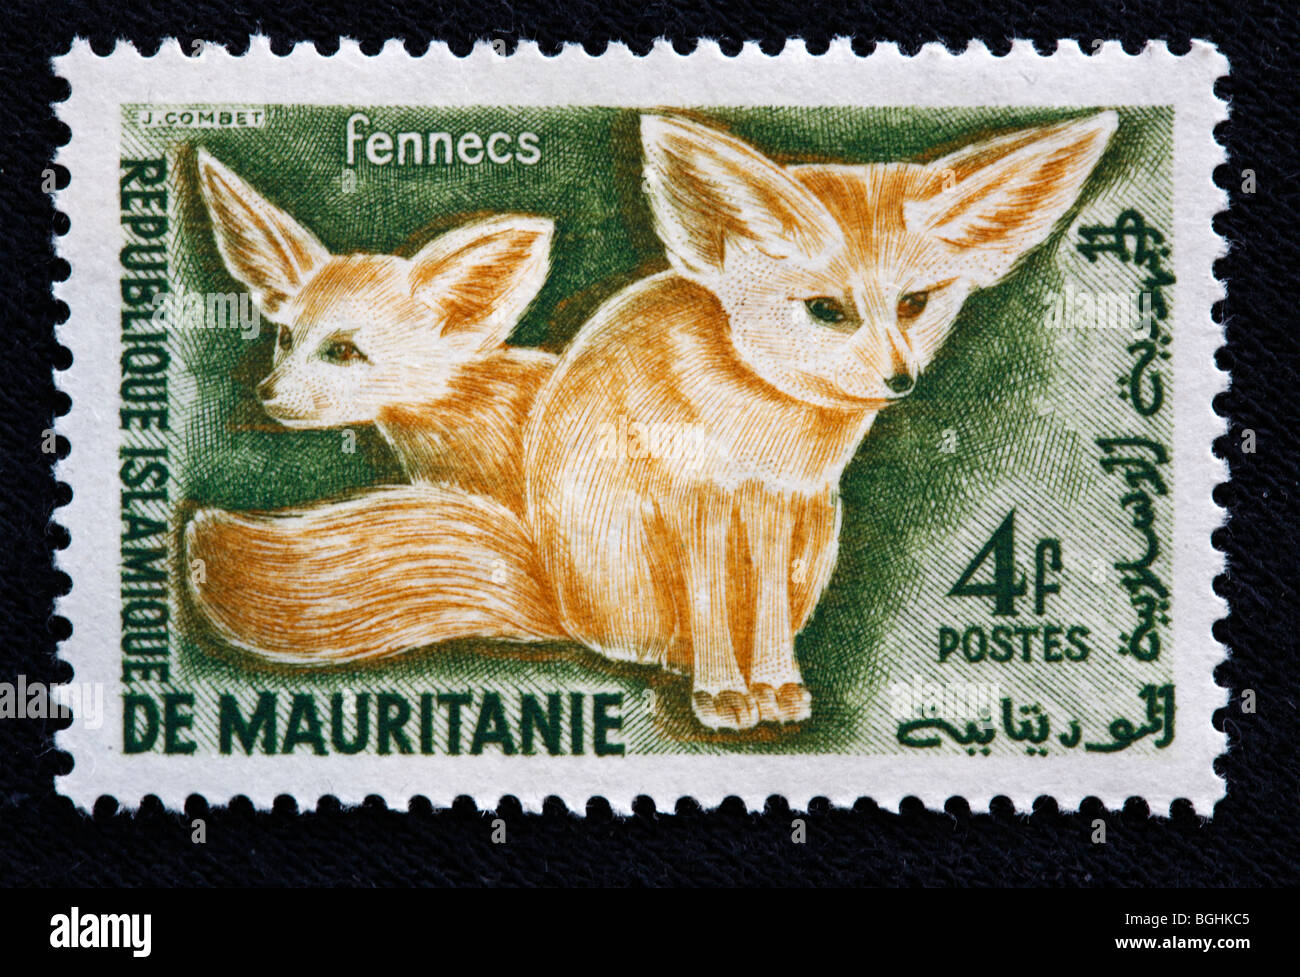 Fennecs, Briefmarke, Republik Mauritanie, 1970er Jahre Stockfoto